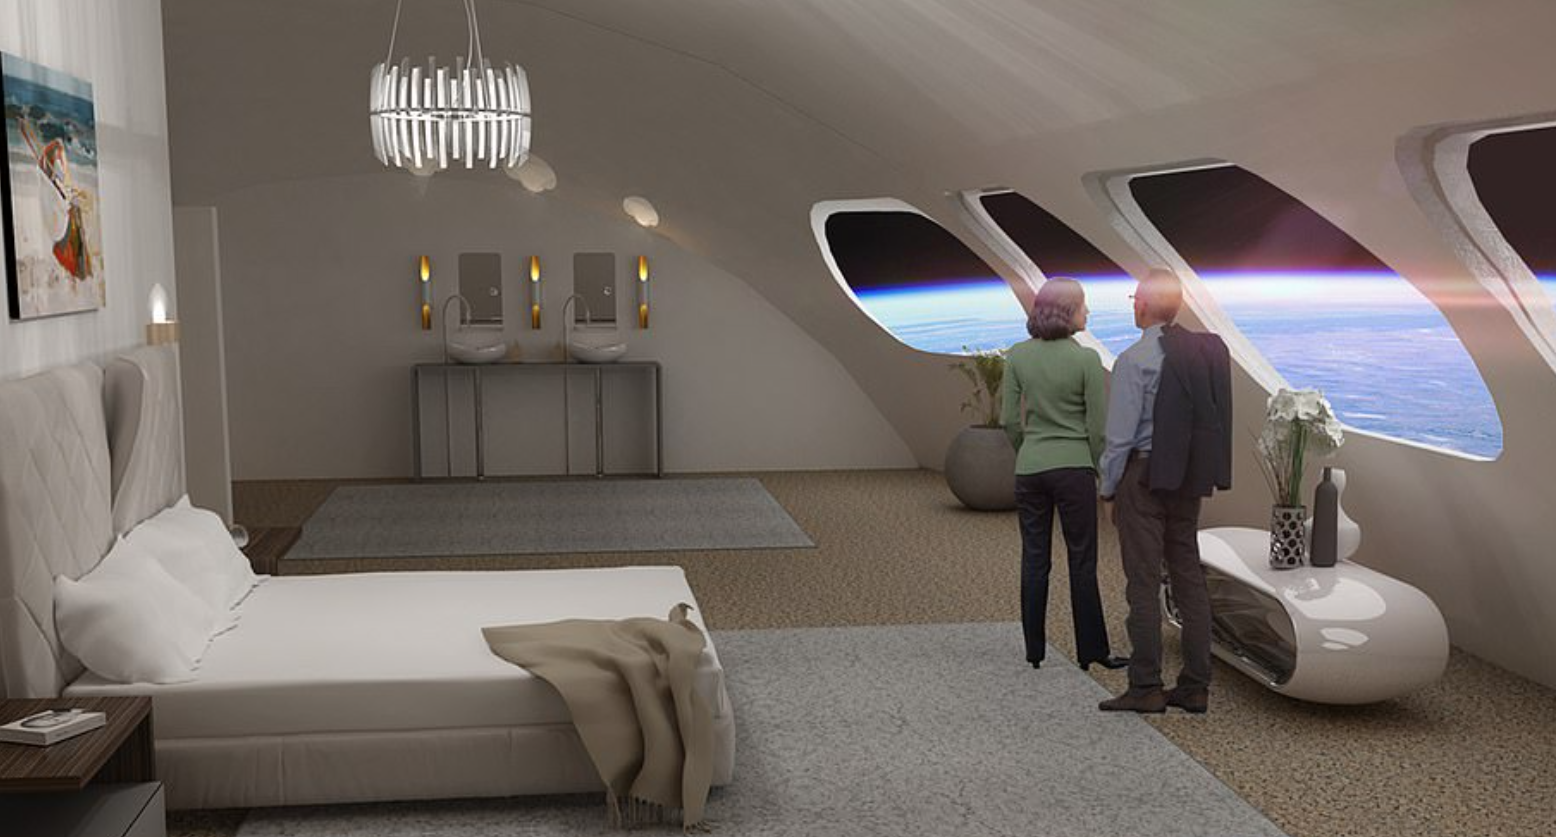 شركة عالمية تُقرر إنشاء أول فندق فضائي يتسع لـ 400 شخص